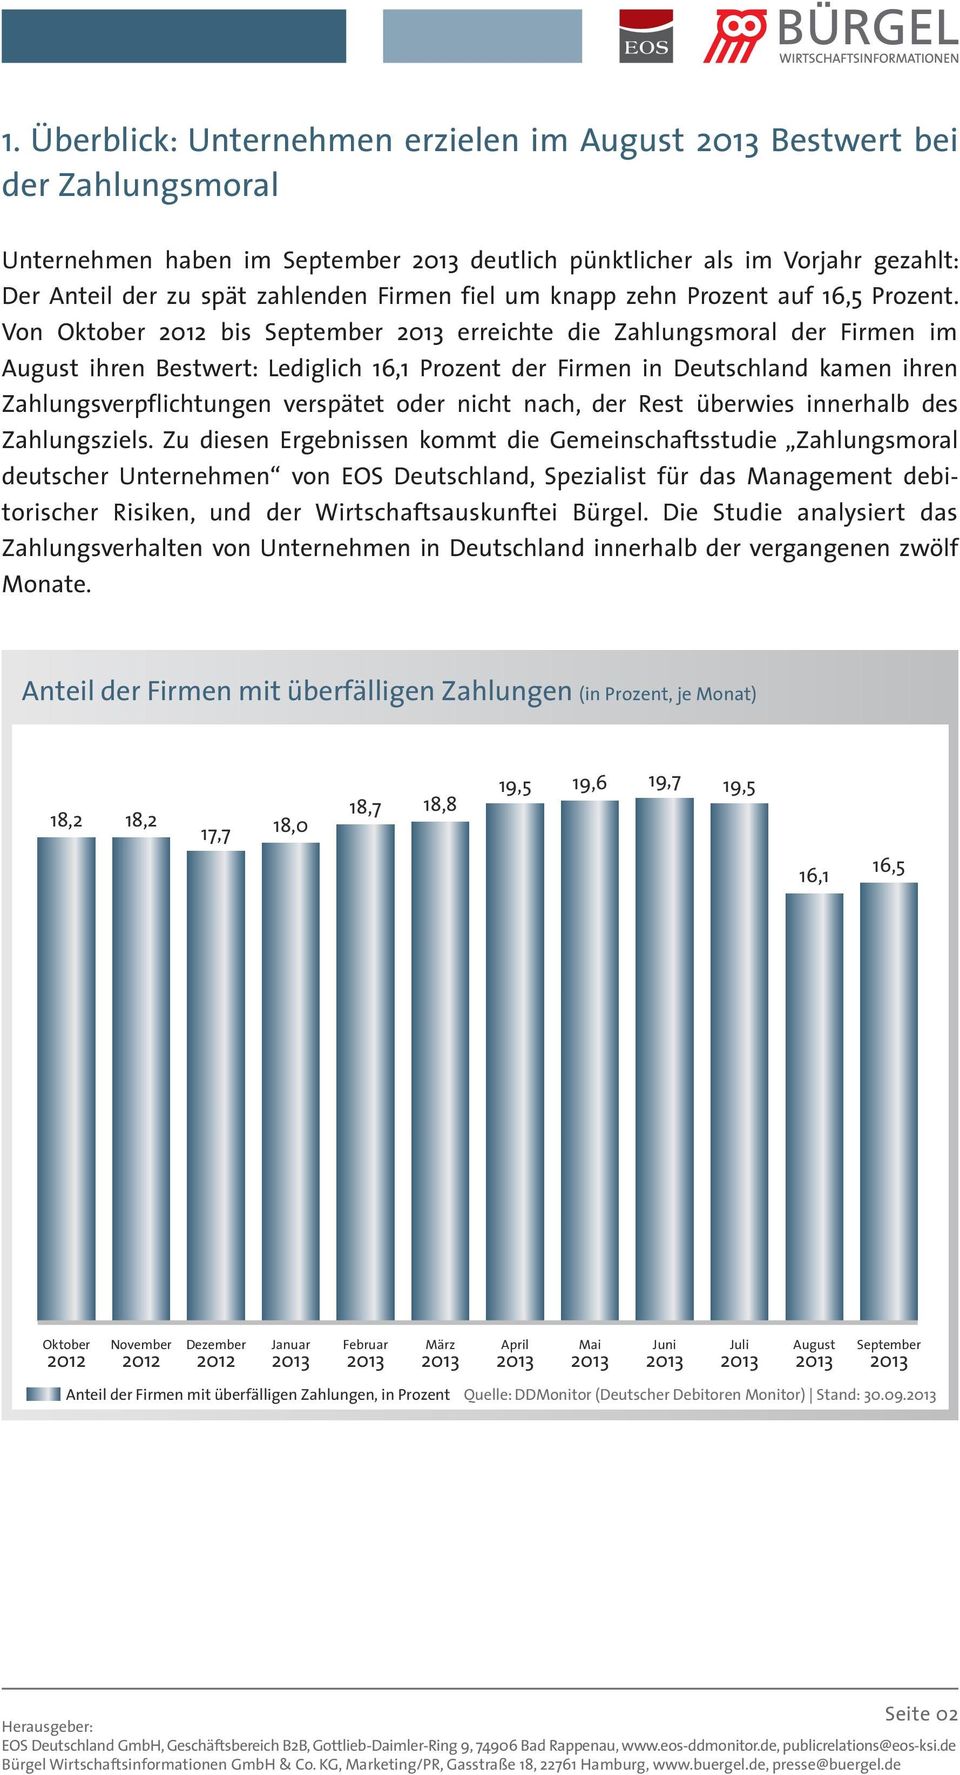 Von Oktober 2012 bis September erreichte die Zahlungsmoral der Firmen im August ihren Bestwert: Lediglich 16,1 Prozent der Firmen in Deutschland kamen ihren Zahlungsverpflichtungen verspätet oder